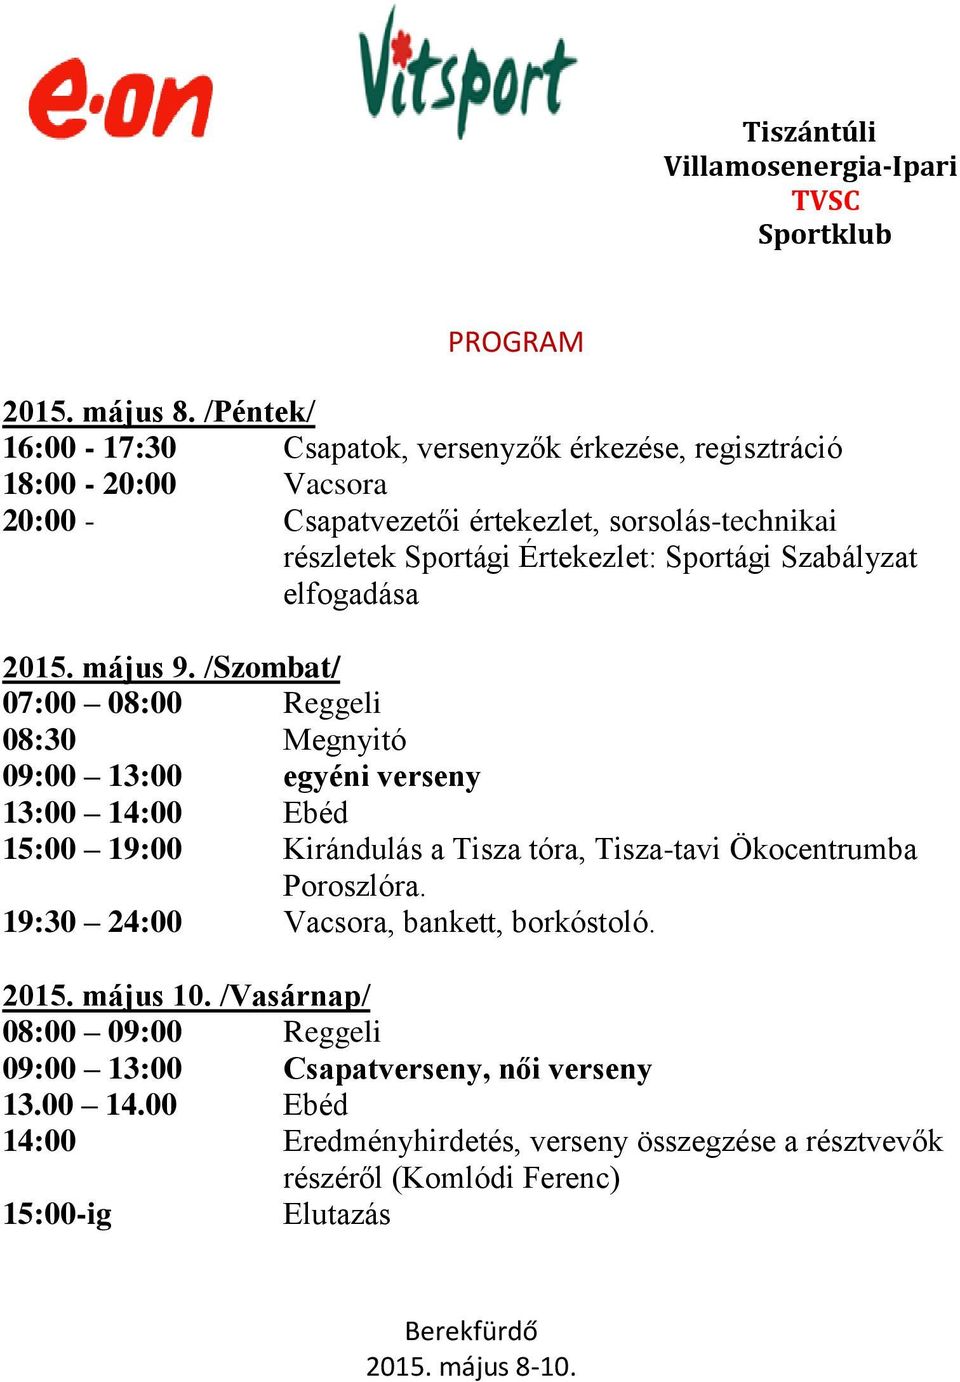 Értekezlet: Sportági Szabályzat elfogadása 2015. május 9.